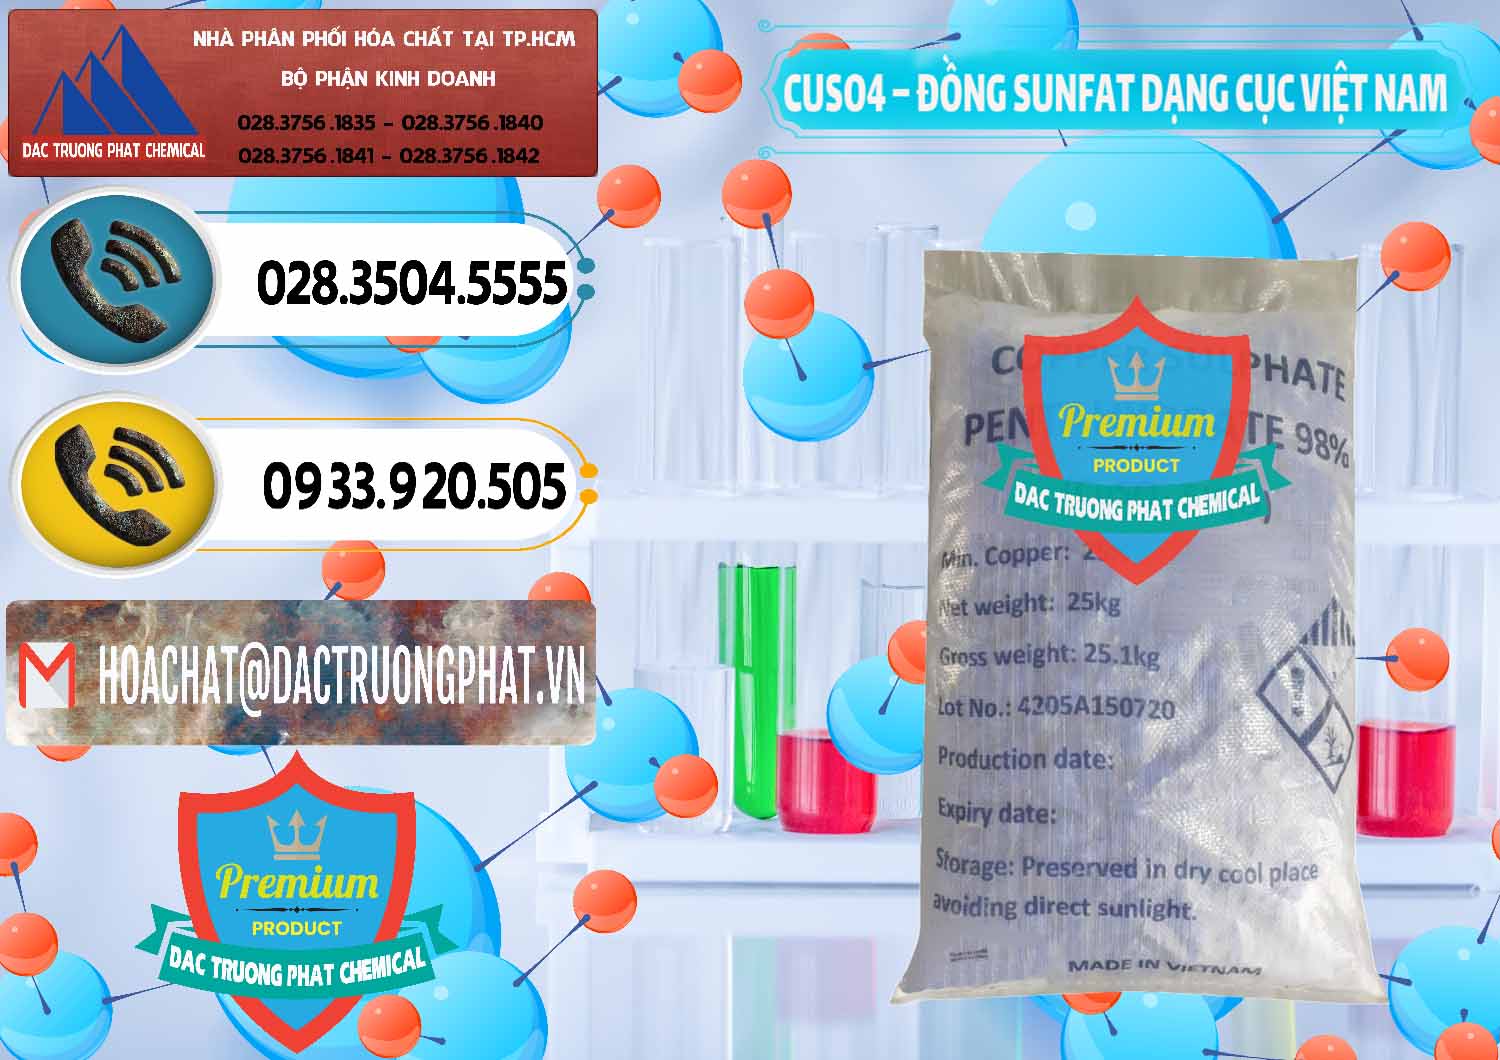 Chuyên cung cấp - bán CUSO4 – Đồng Sunfat Dạng Cục Việt Nam - 0303 - Công ty chuyên kinh doanh & bán hóa chất tại TP.HCM - hoachatdetnhuom.vn